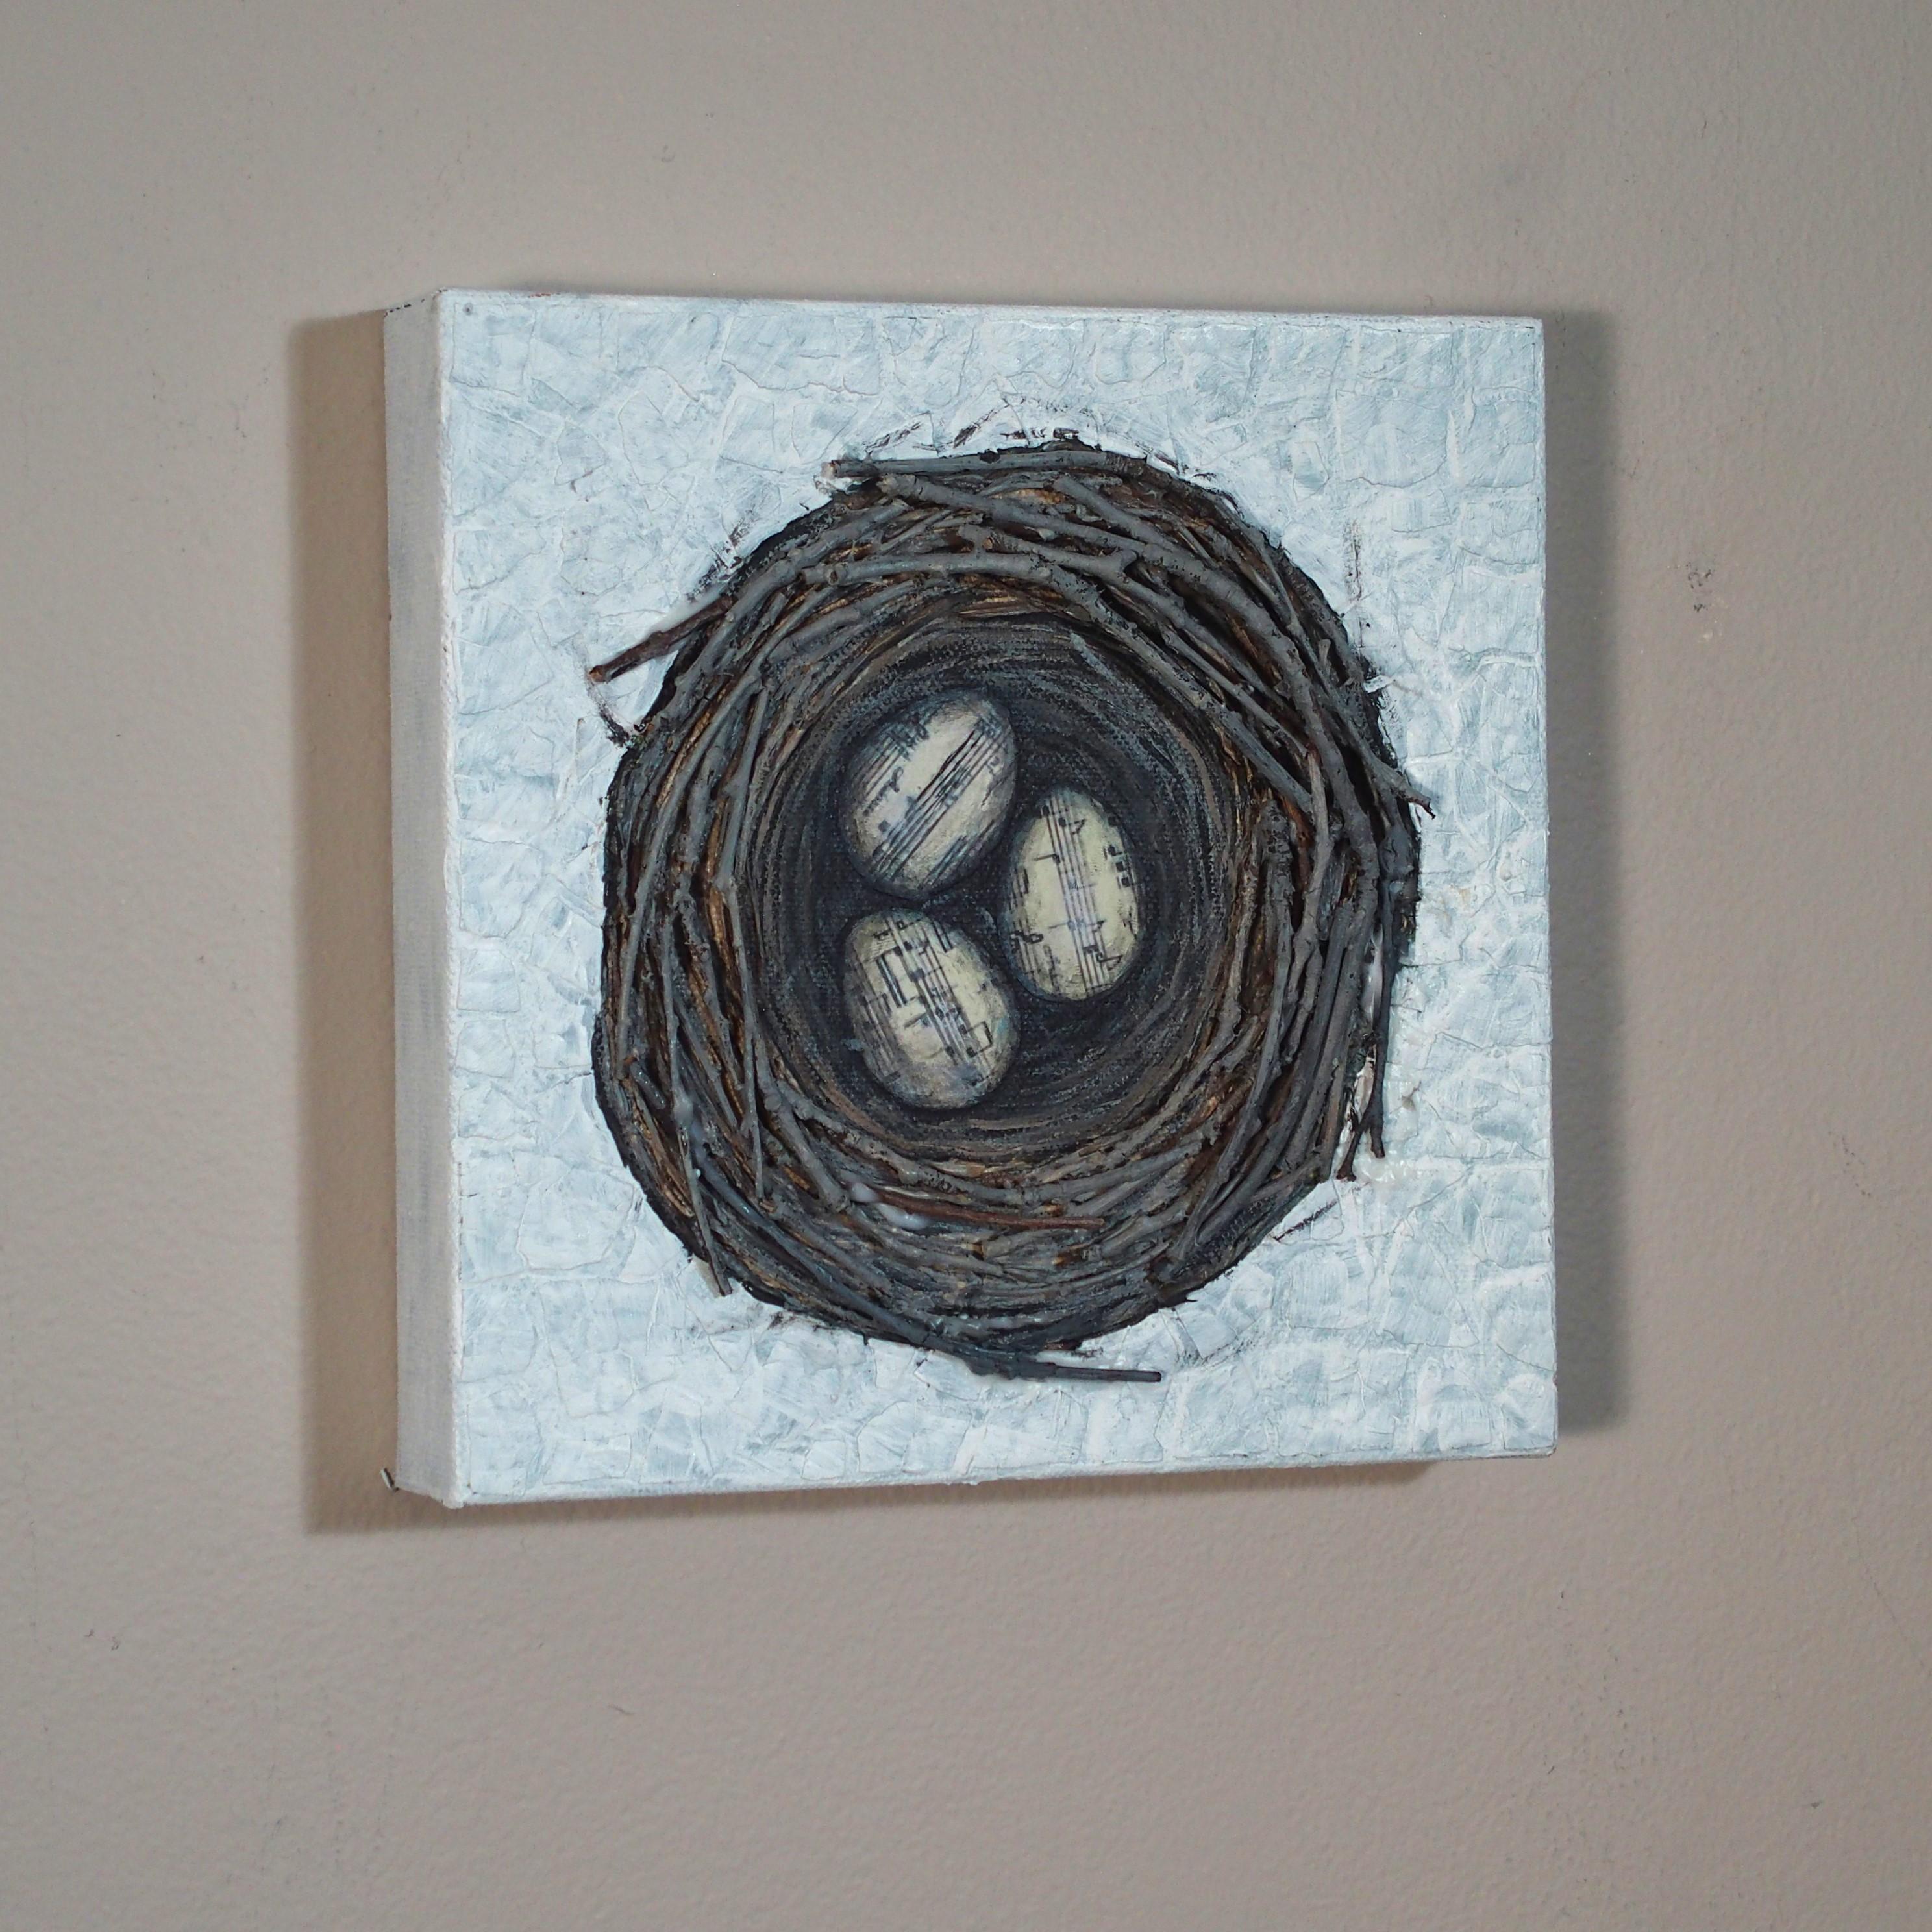 <p>Kommentare des Künstlers<br>Drei Singvogel-Eier liegen in einem sorgfältig geflochtenen Nest aus Zweigen, das mit Fragmenten von Notenblättern verziert ist. Ein Vorläufer der Melodien, die die jungen Vögel bald zwitschern werden. Diese